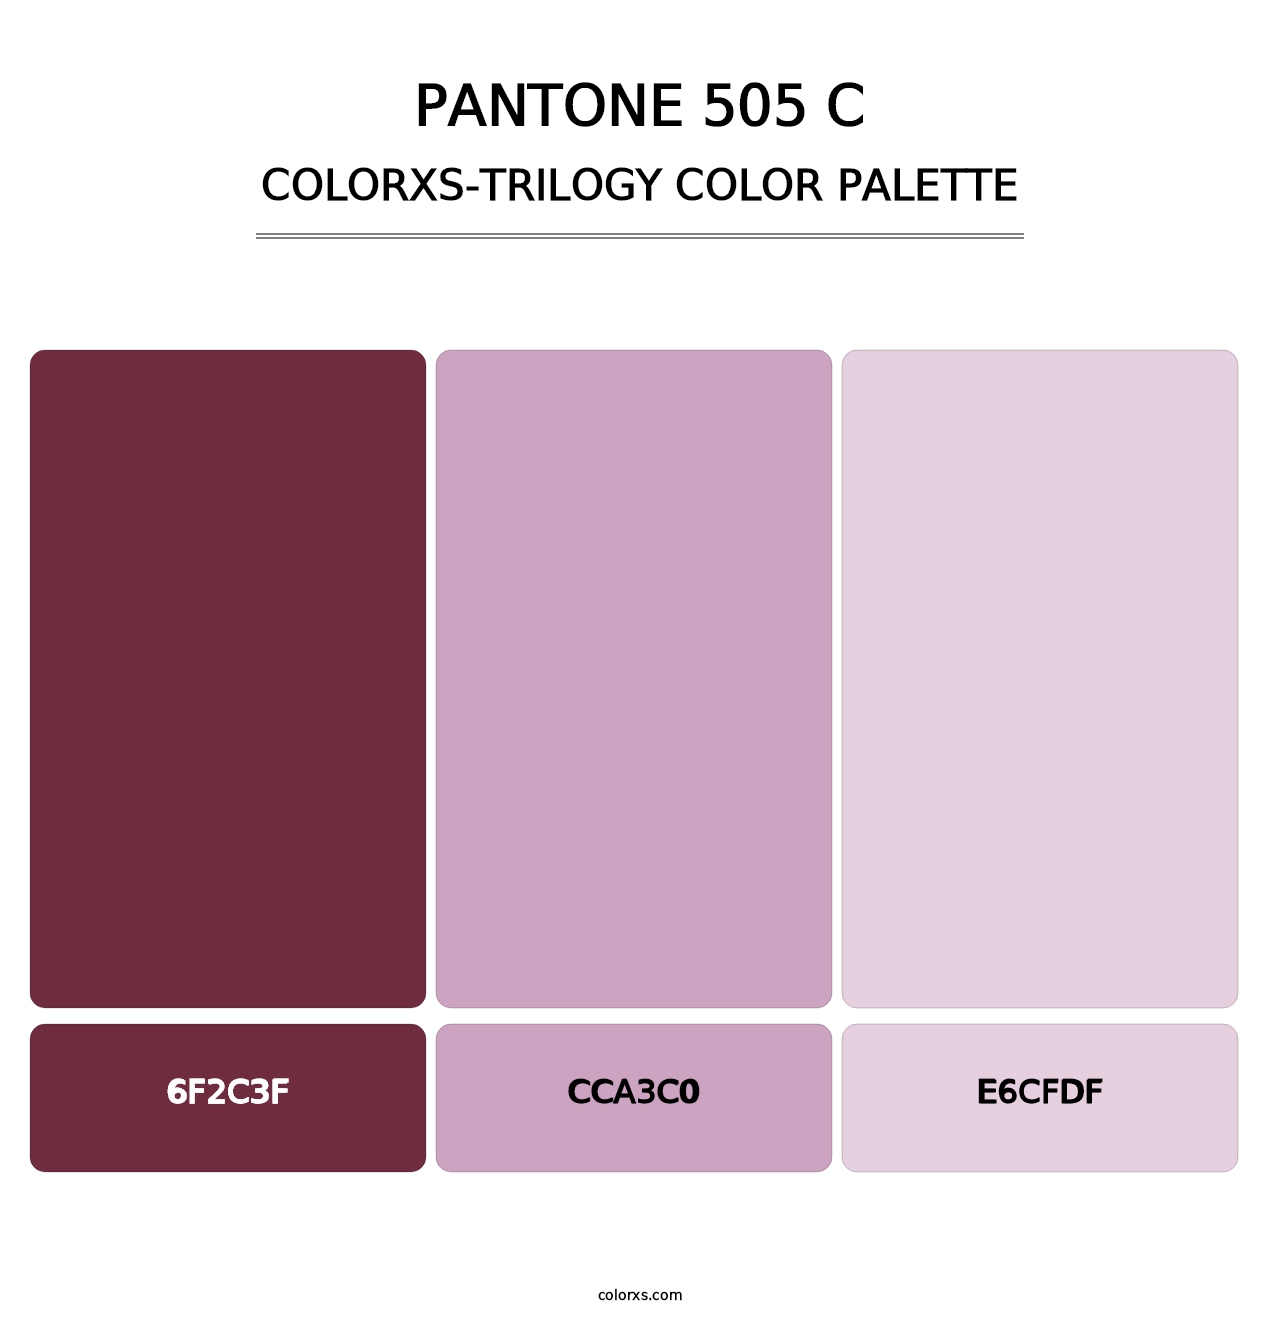 PANTONE 505 C - Colorxs Trilogy Palette